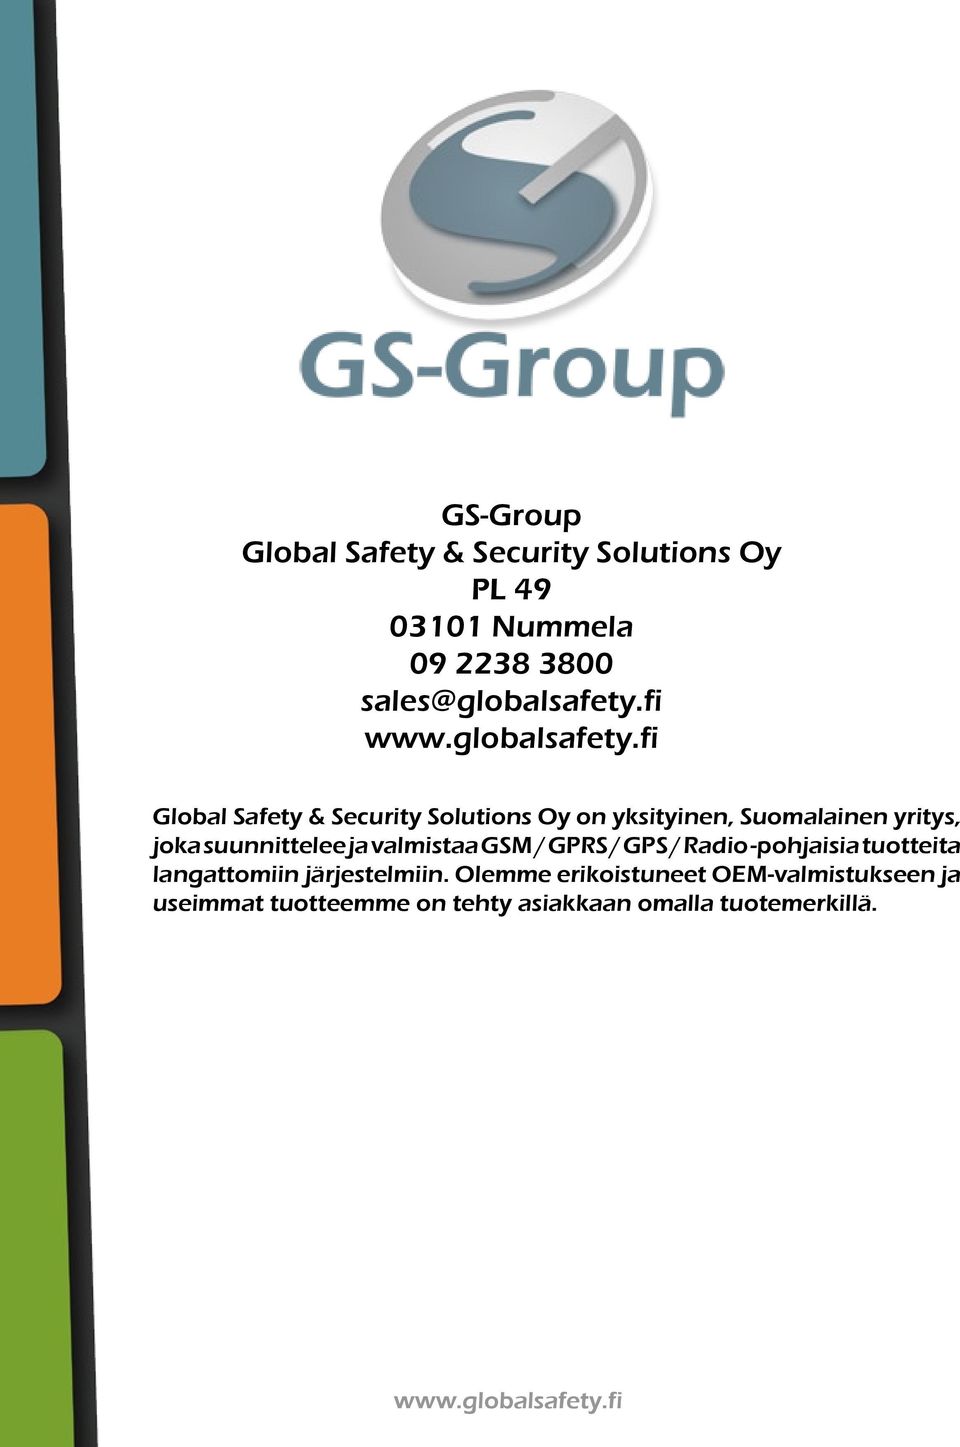 fi Global Safety & Security Solutions Oy on yksityinen, Suomalainen yritys, joka suunnittelee